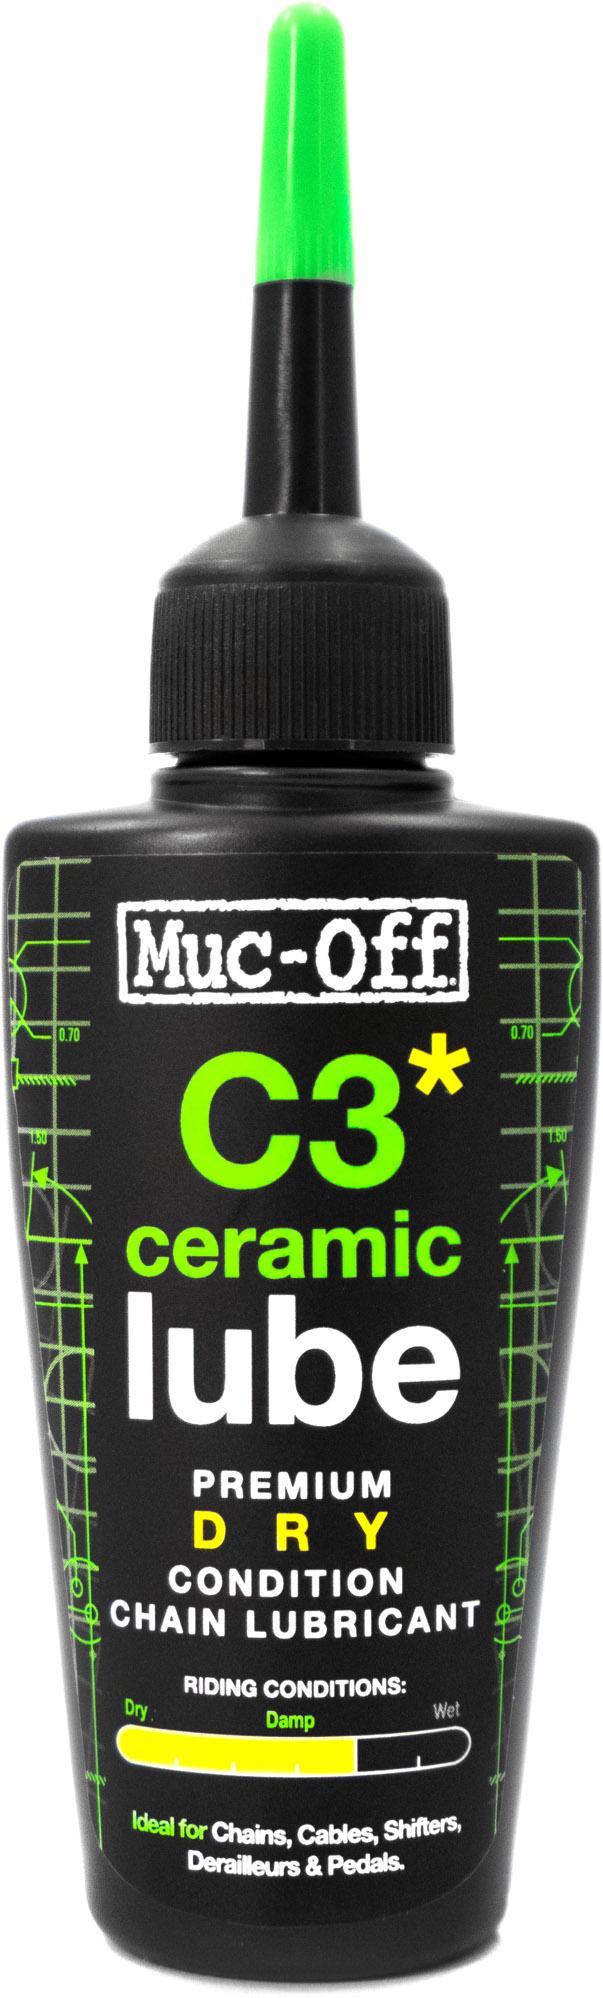 Muc-off C3 Dry Ceramic Chain Lube (50ml)  Transparent